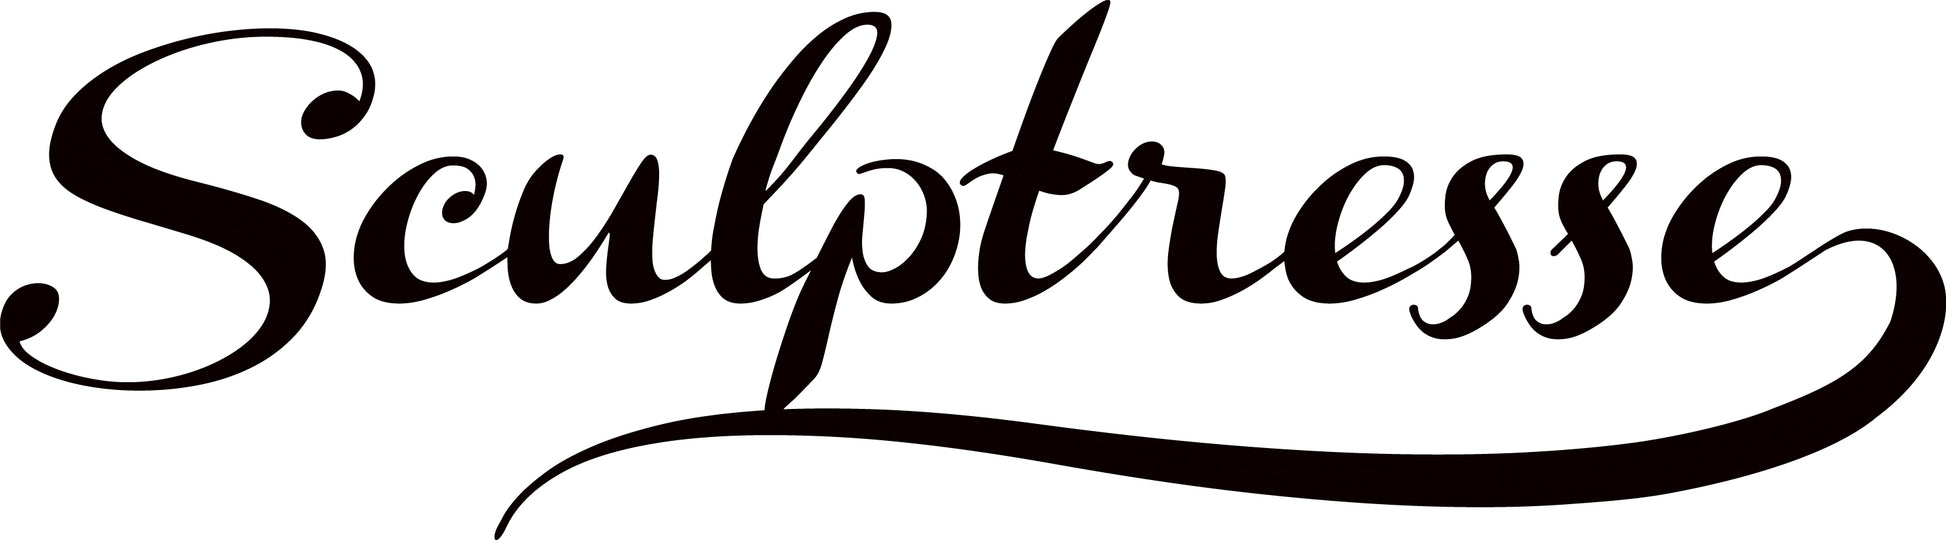 Scupltresse Brand Logo